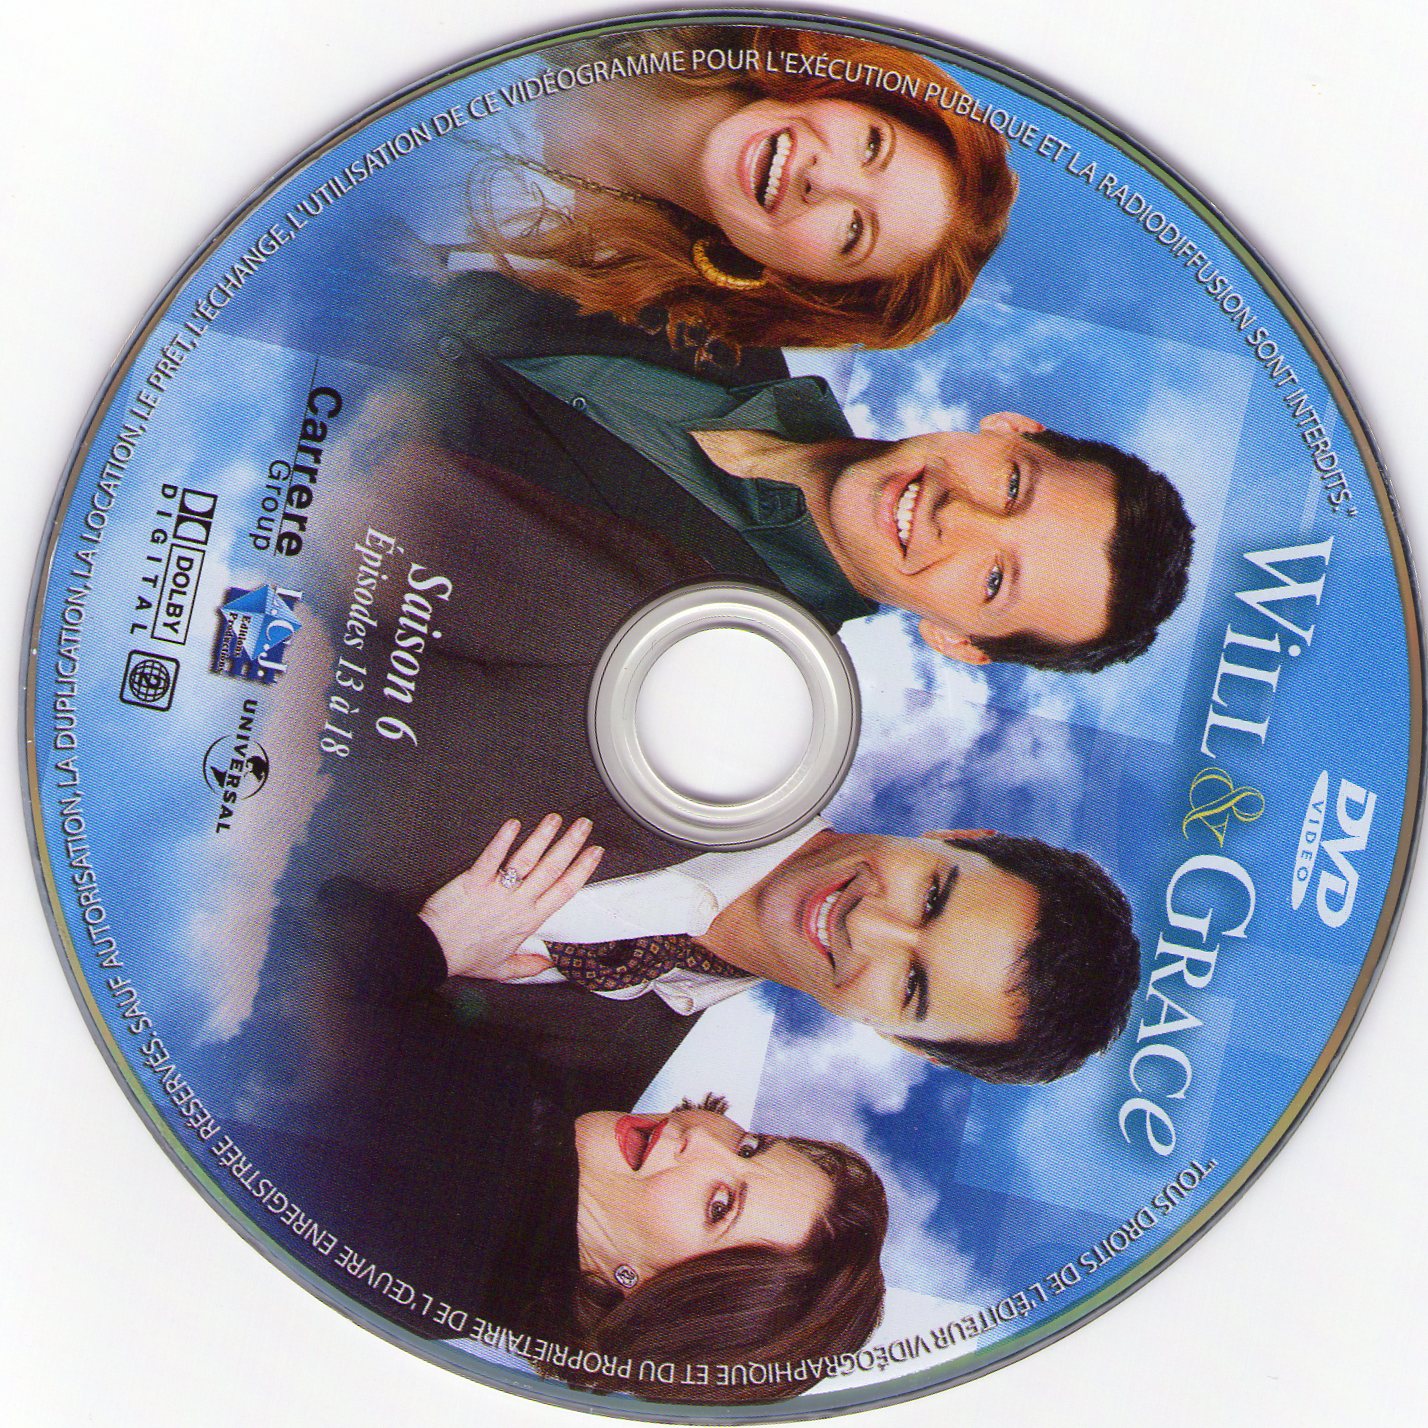 Will et Grace Saison 6 DISC 3